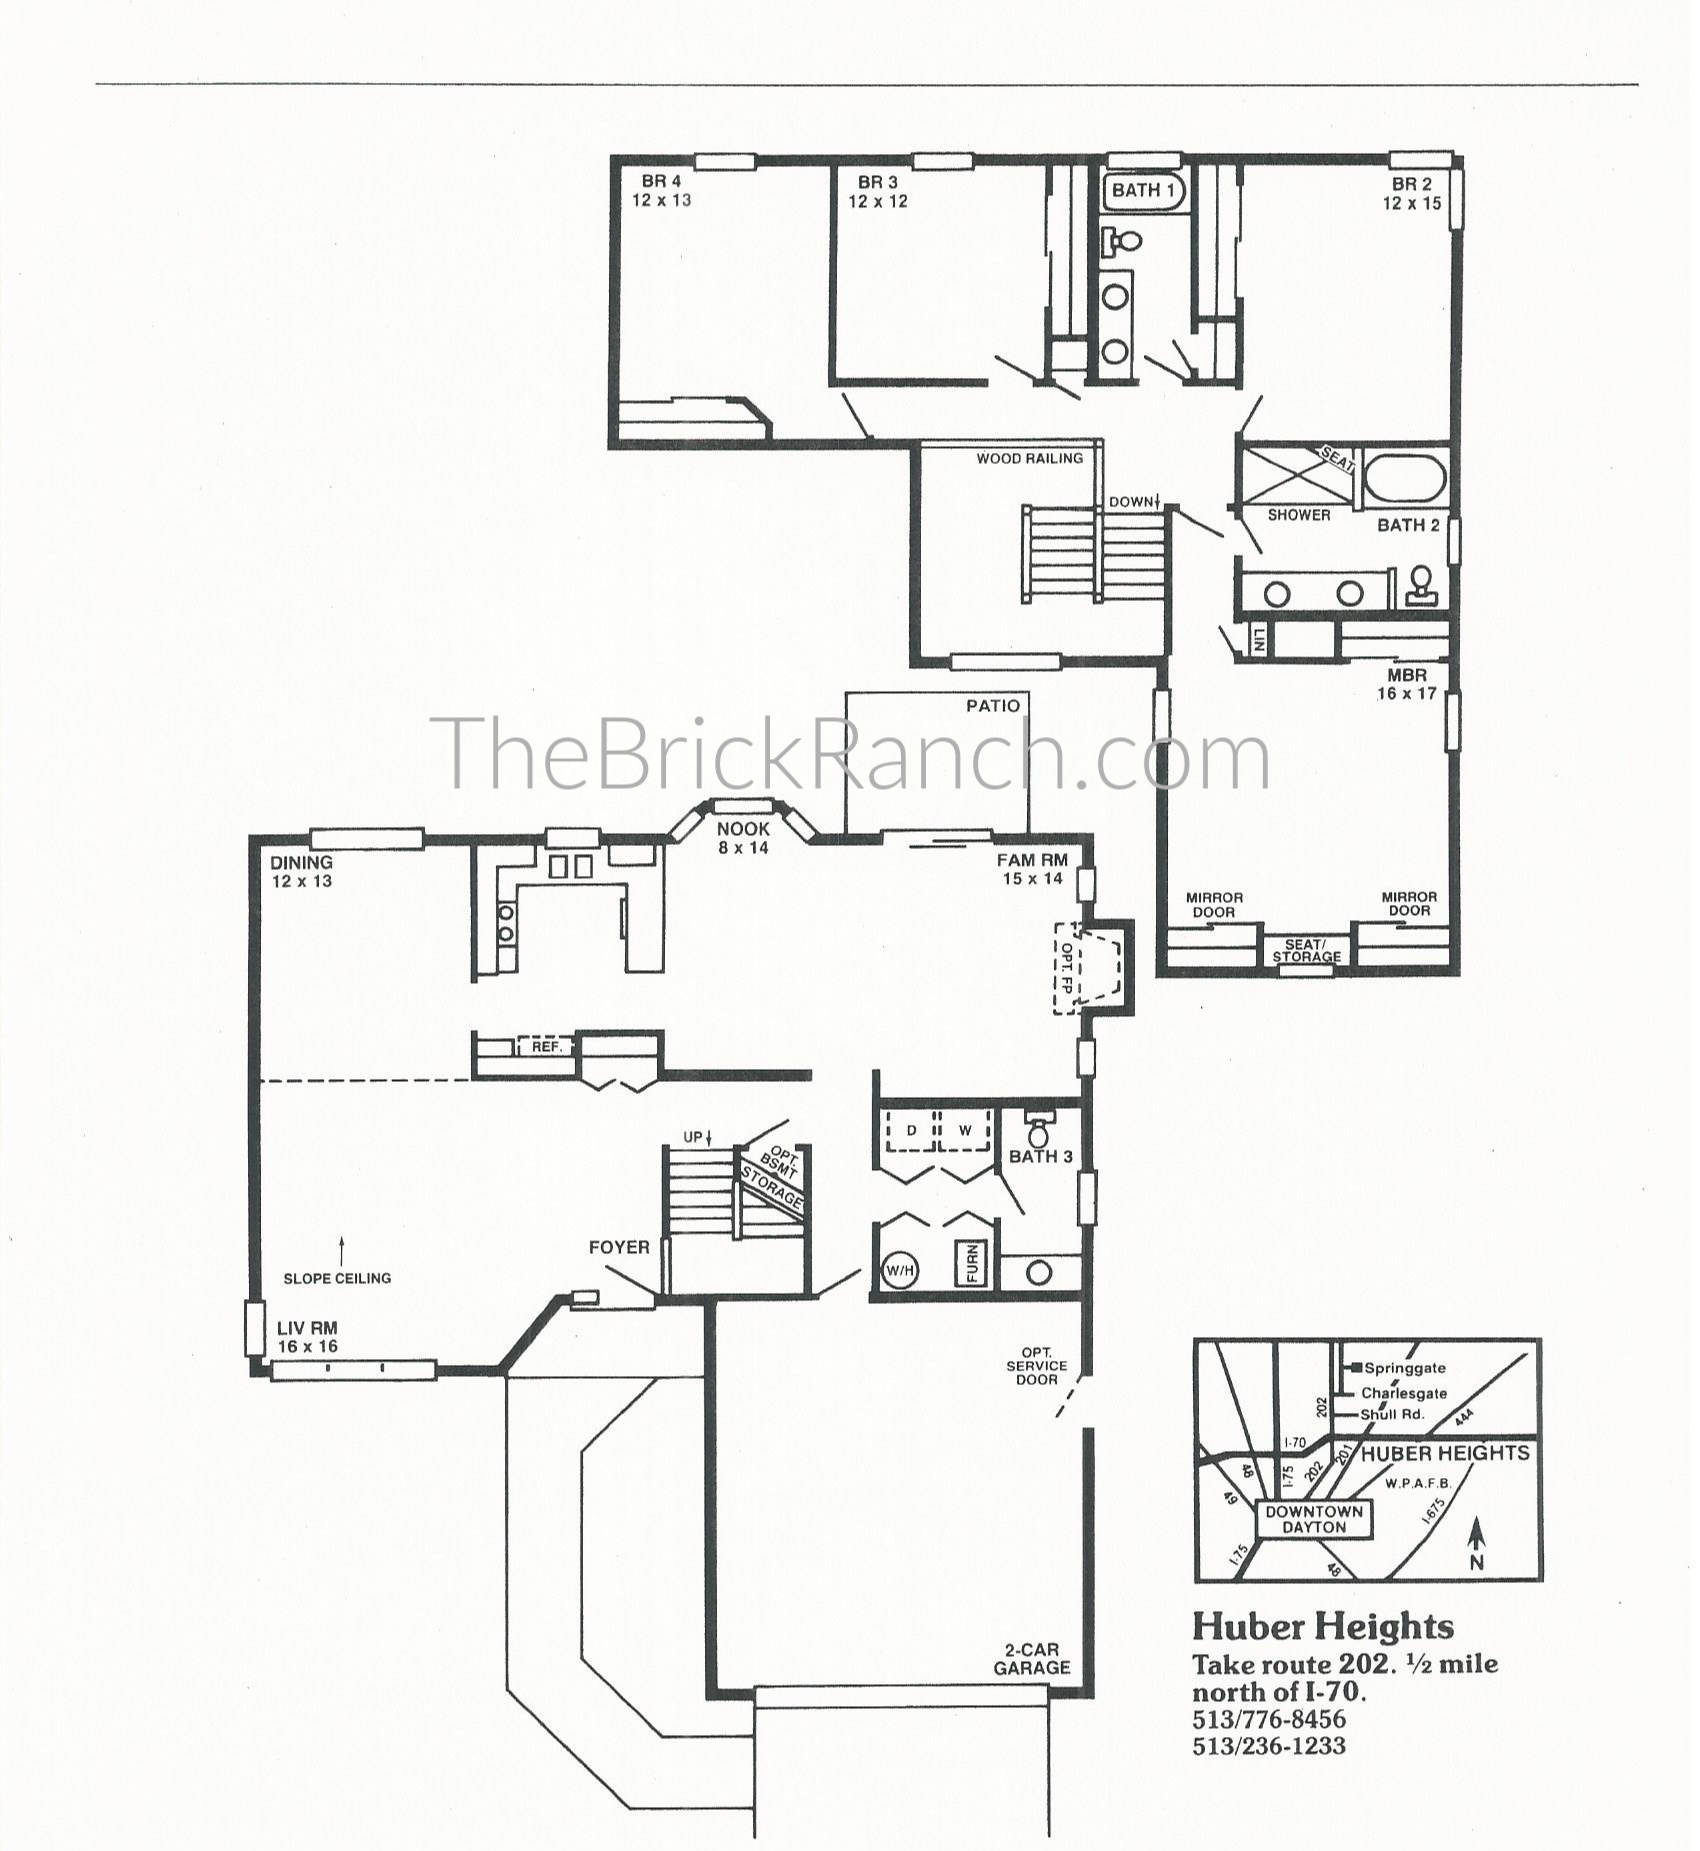 Huber Home Floor Plans: The Deerfield